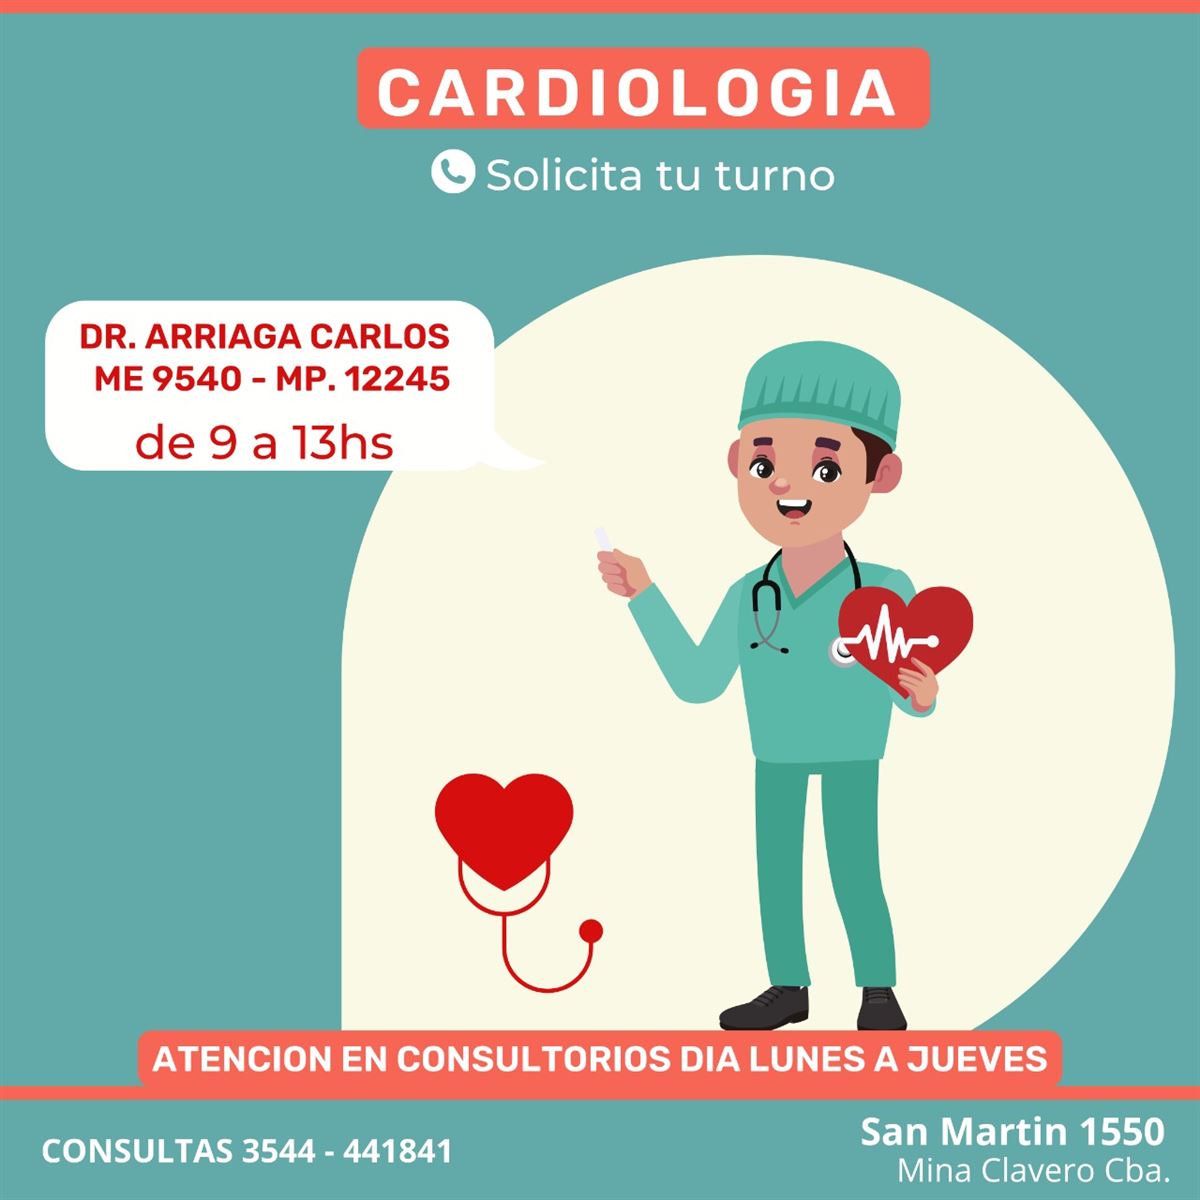 Cardiología - InfoGuia Traslasierra - Cardiología